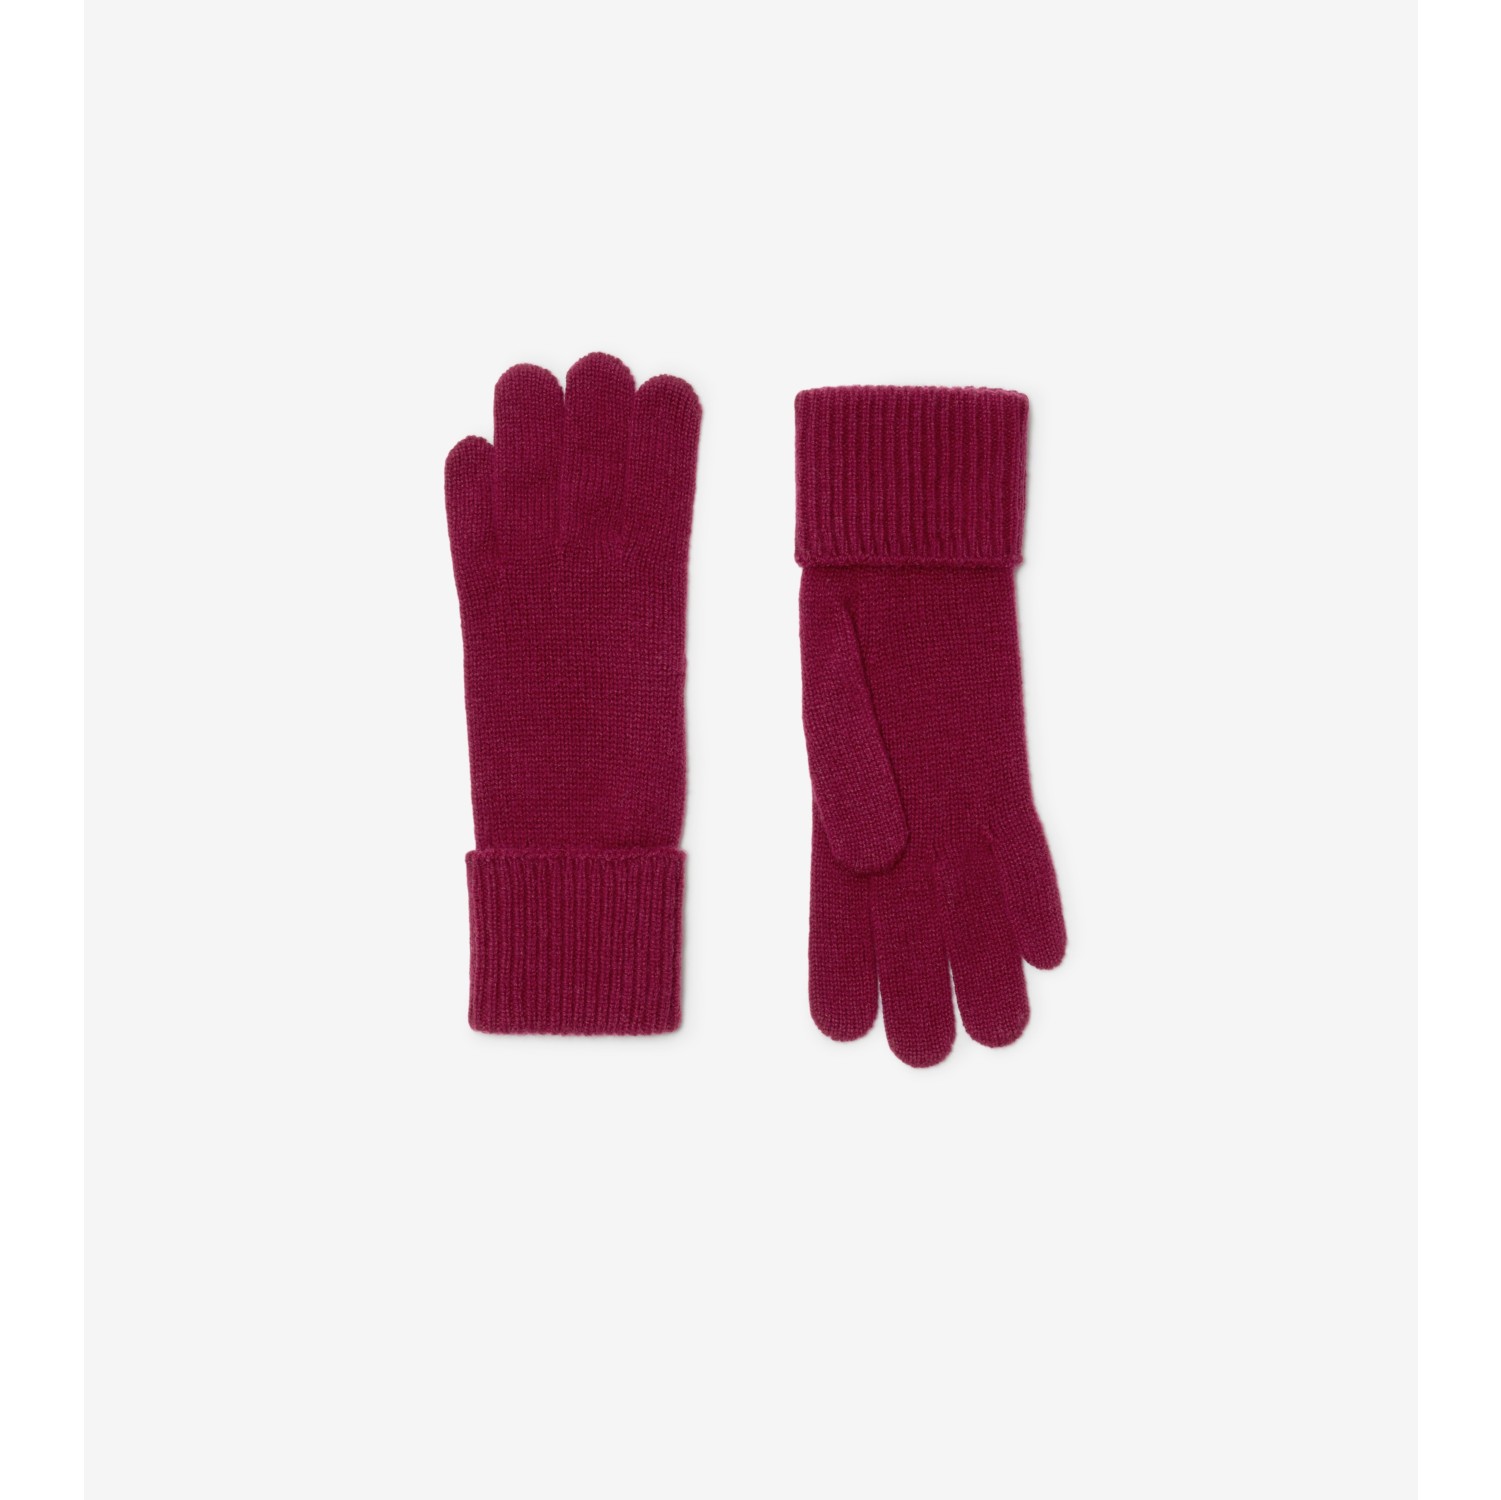 Handschuhe aus einer Kaschmirmischung